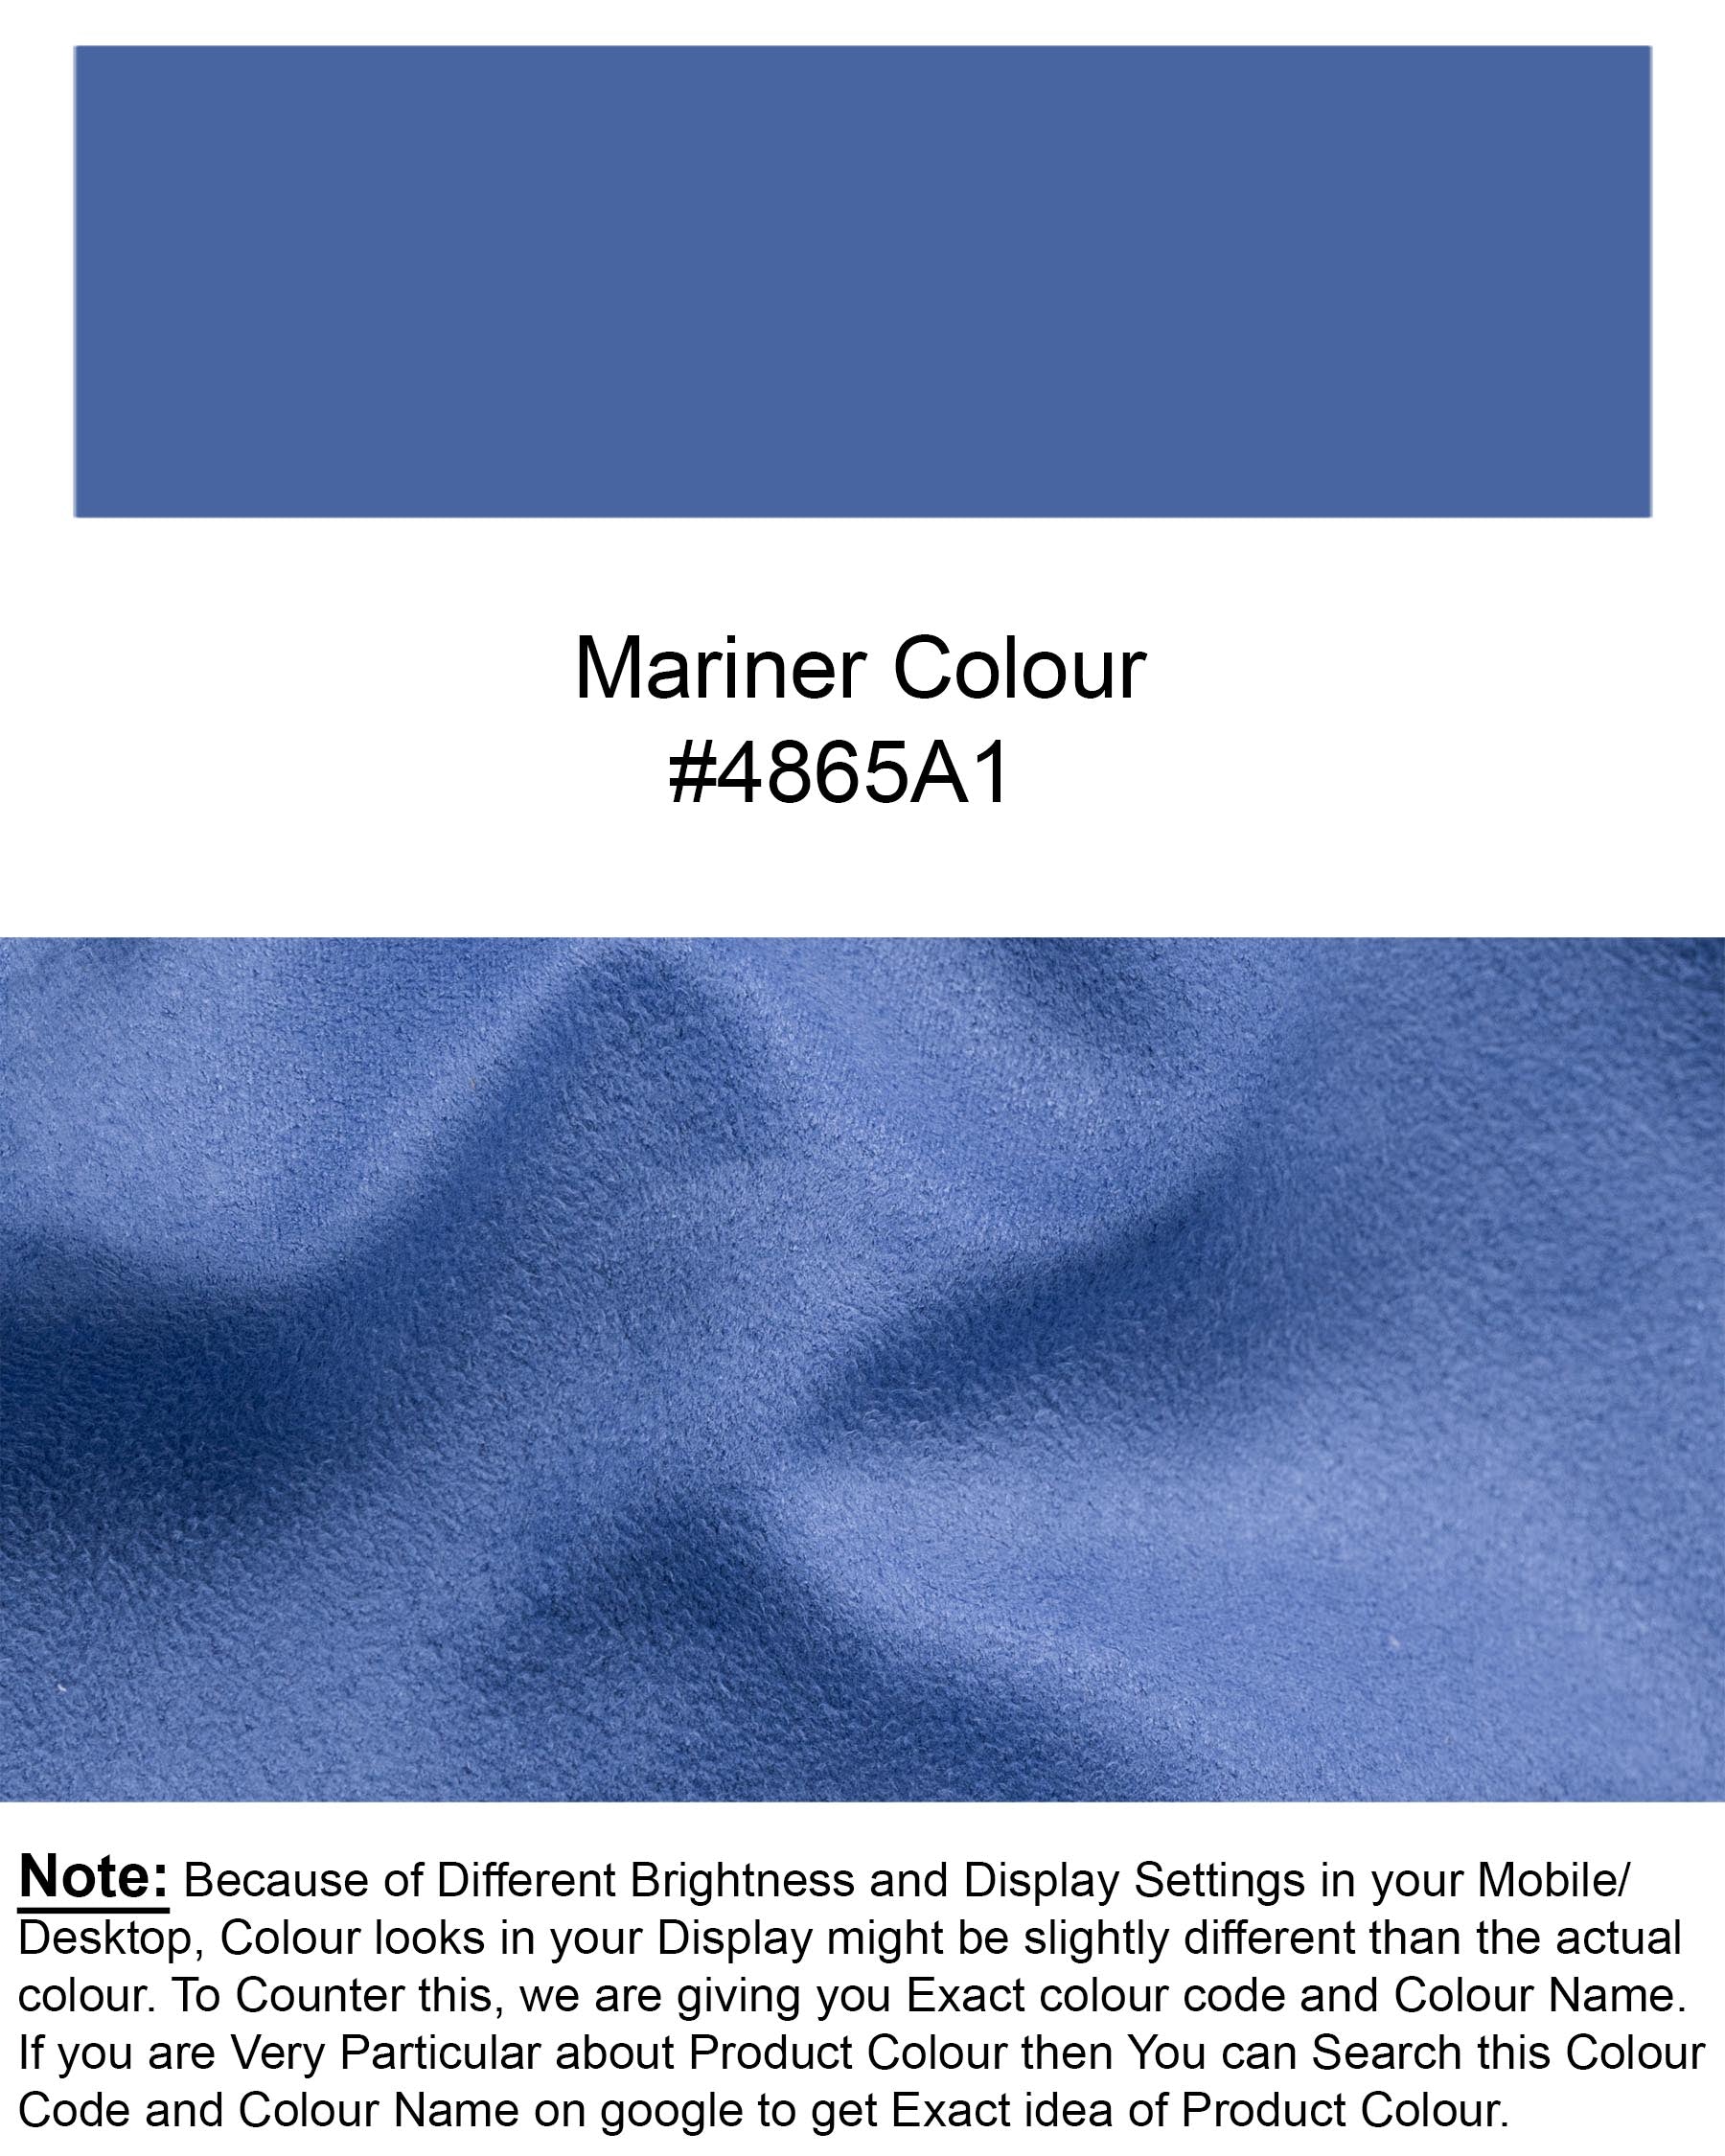 Mariner Blue velvet Cross Buttoned Bandhgala Designer Blazer BL1801-CBG-36,BL1801-CBG-38,BL1801-CBG-40,BL1801-CBG-42,BL1801-CBG-44,BL1801-CBG-46,BL1801-CBG-48,BL1801-CBG-50,BL1801-CBG-52,BL1801-CBG-54,BL1801-CBG-56,BL1801-CBG-58,BL1801-CBG-60